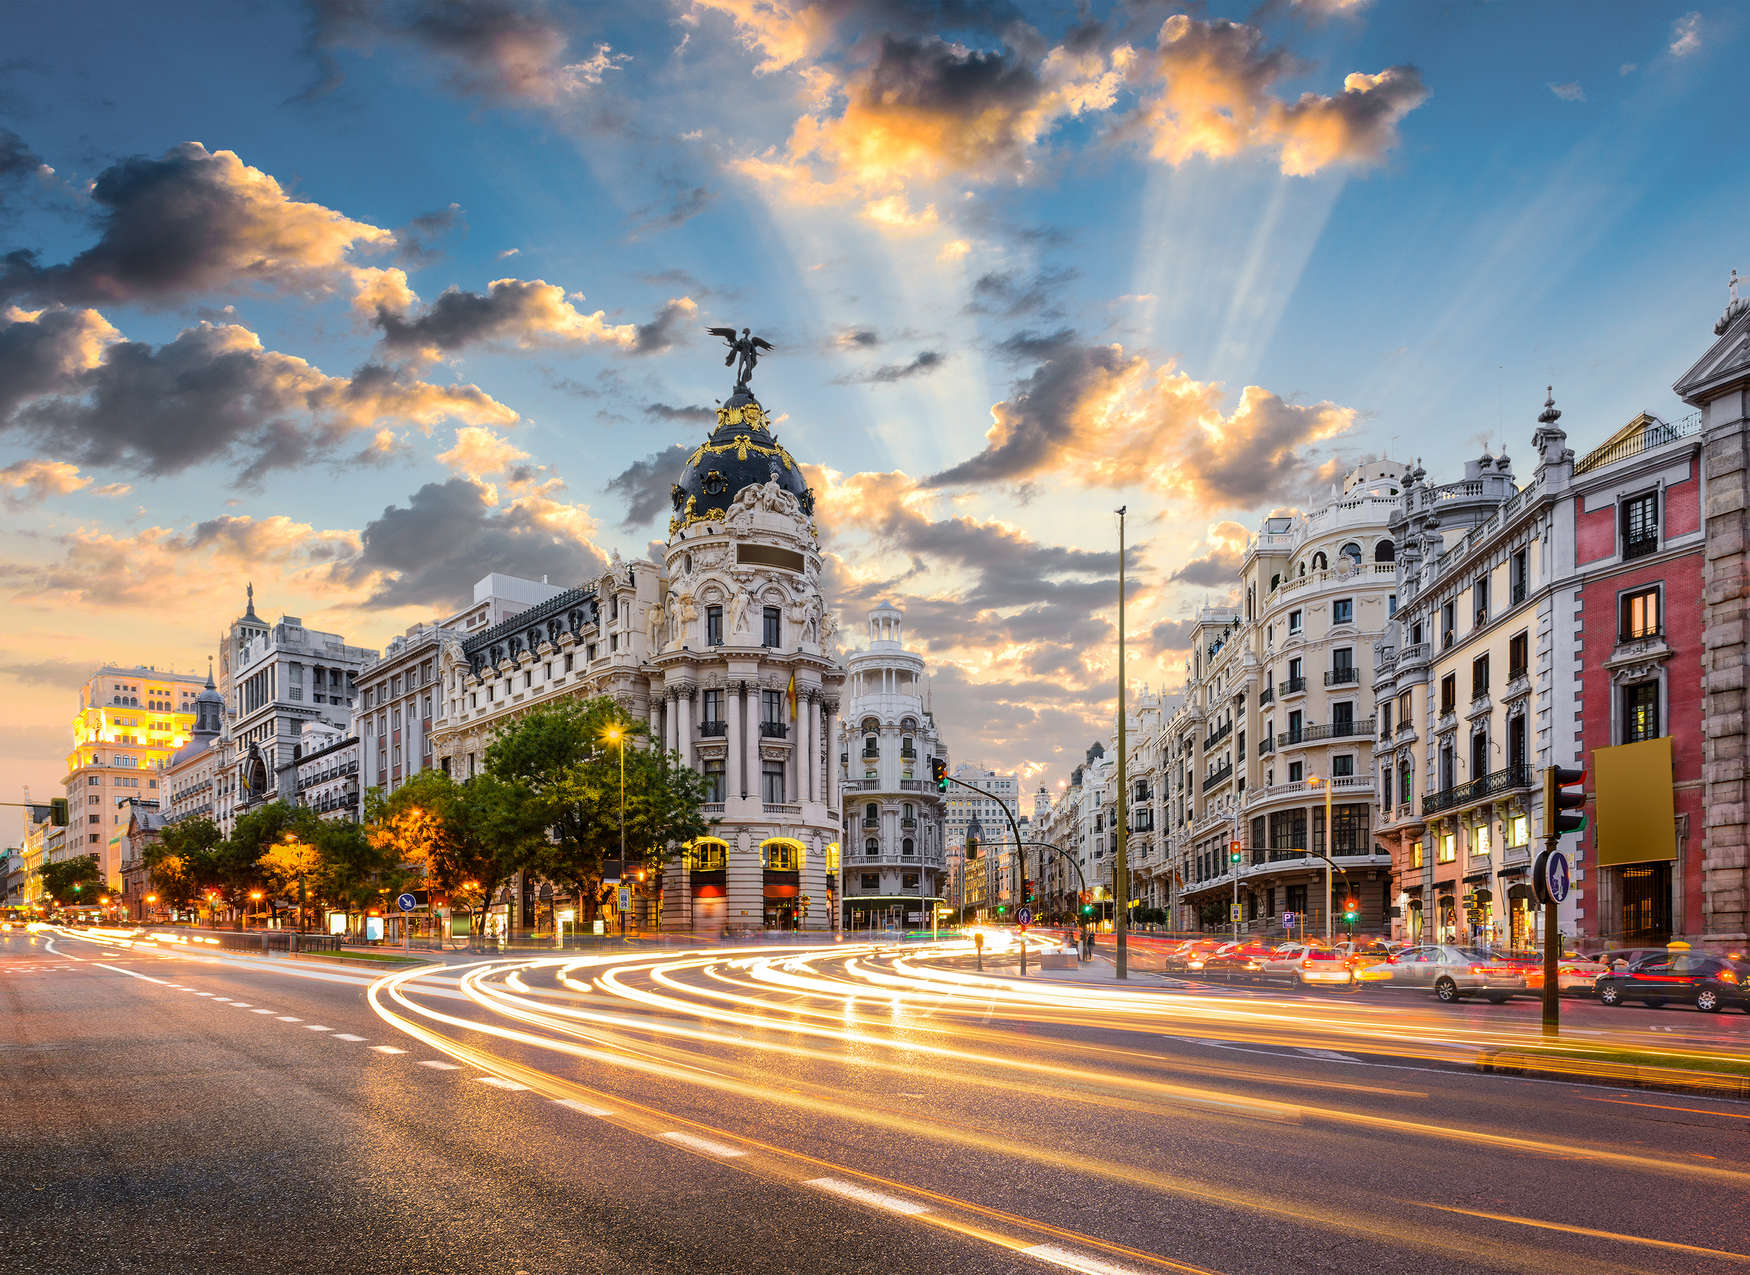             Madrid's straten in de ochtend - blauw, grijs, wit
        